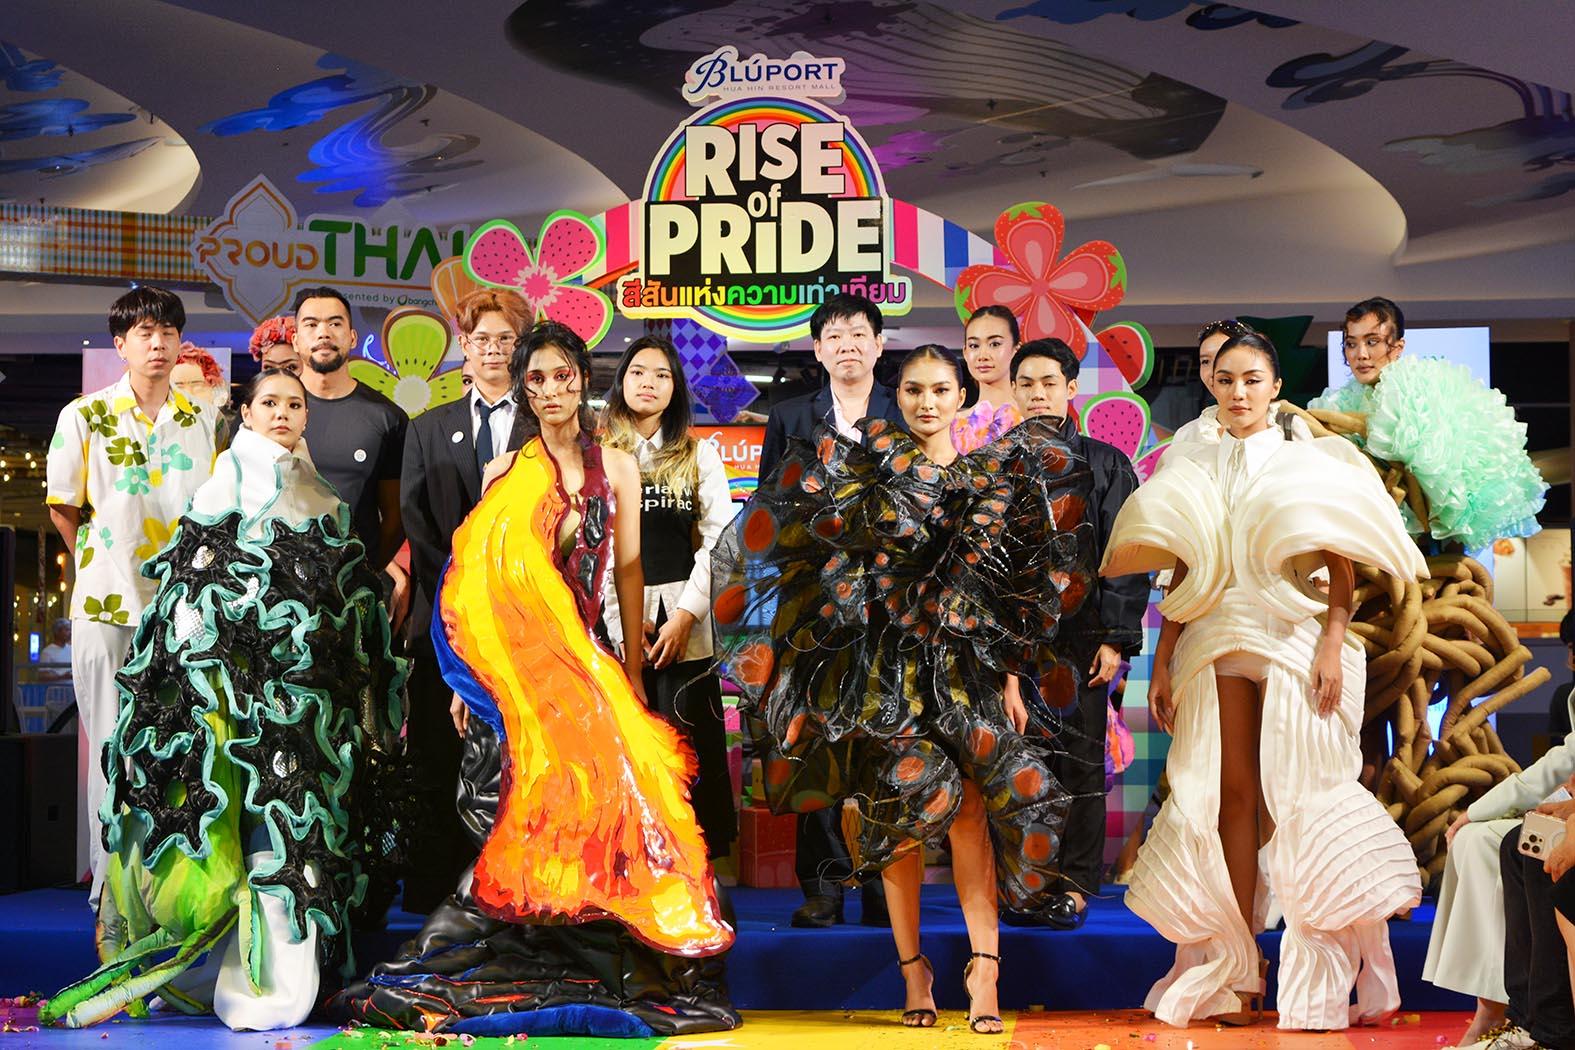 ประจวบคีรีขันธ์-“บลูพอร์ต” จัดเต็มฉลอง PRIDE MONTH เปิดนิทรรศการ Pride Art ครั้งแรกในหัวหิน